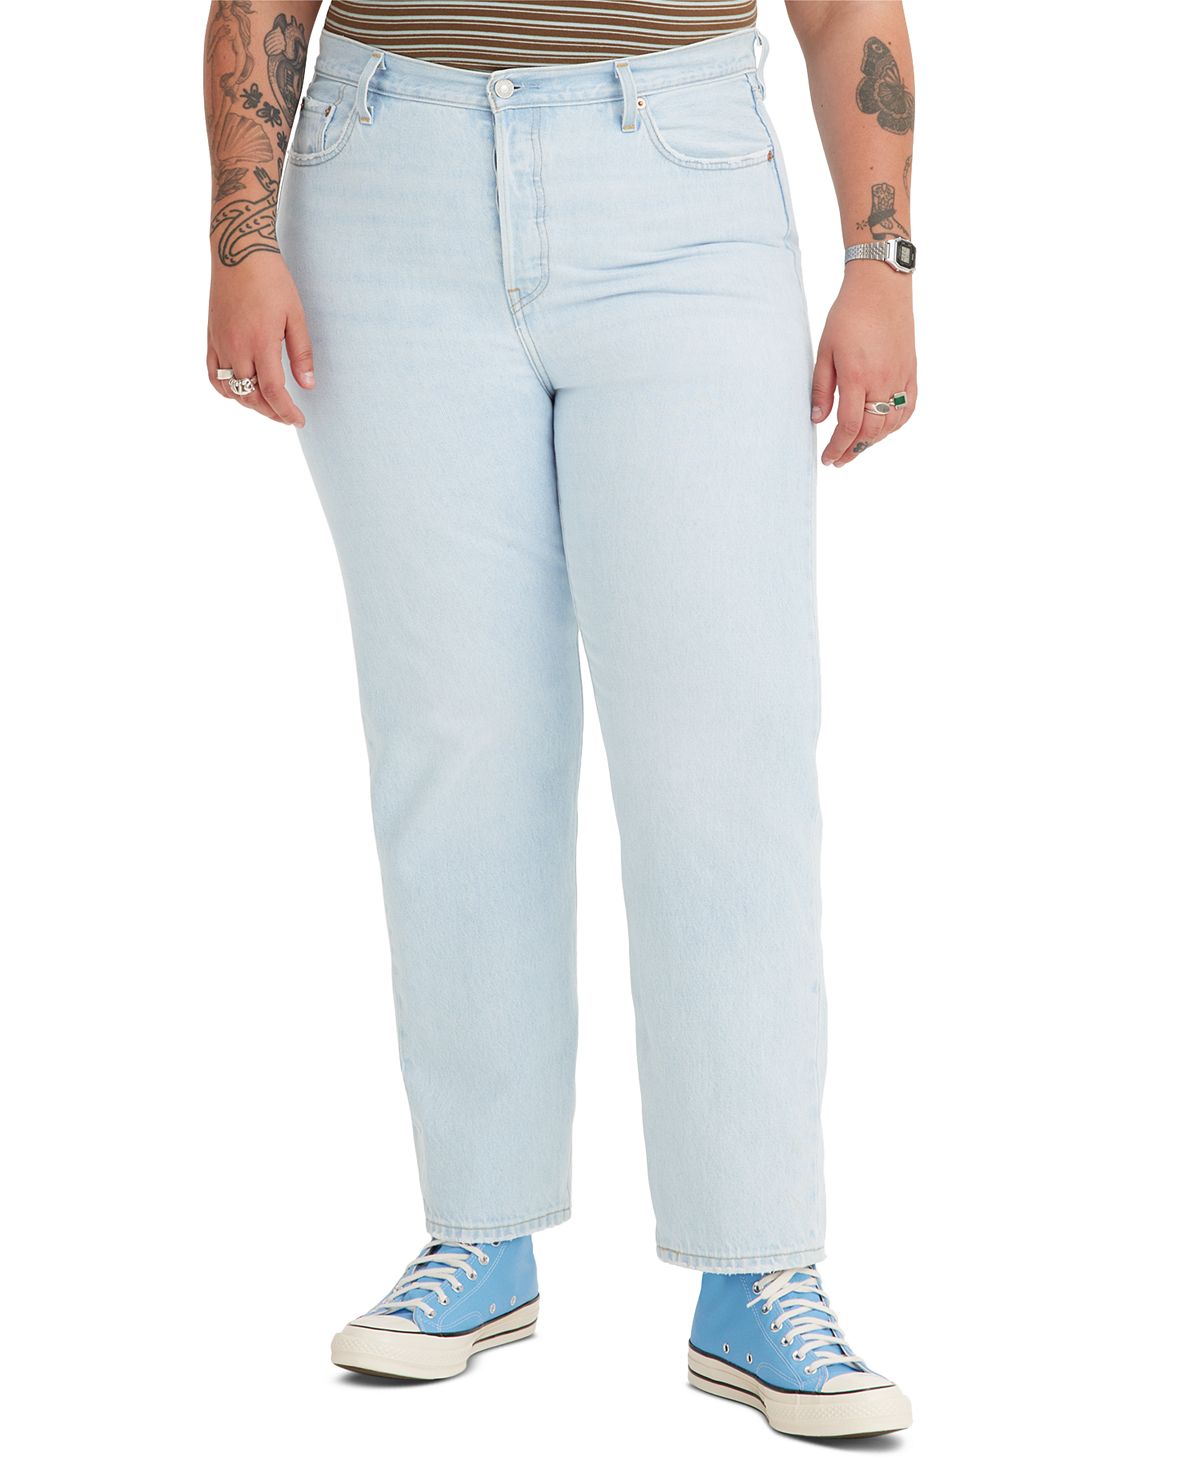 Модные хлопковые джинсы размера 501 с высокой посадкой Levi's